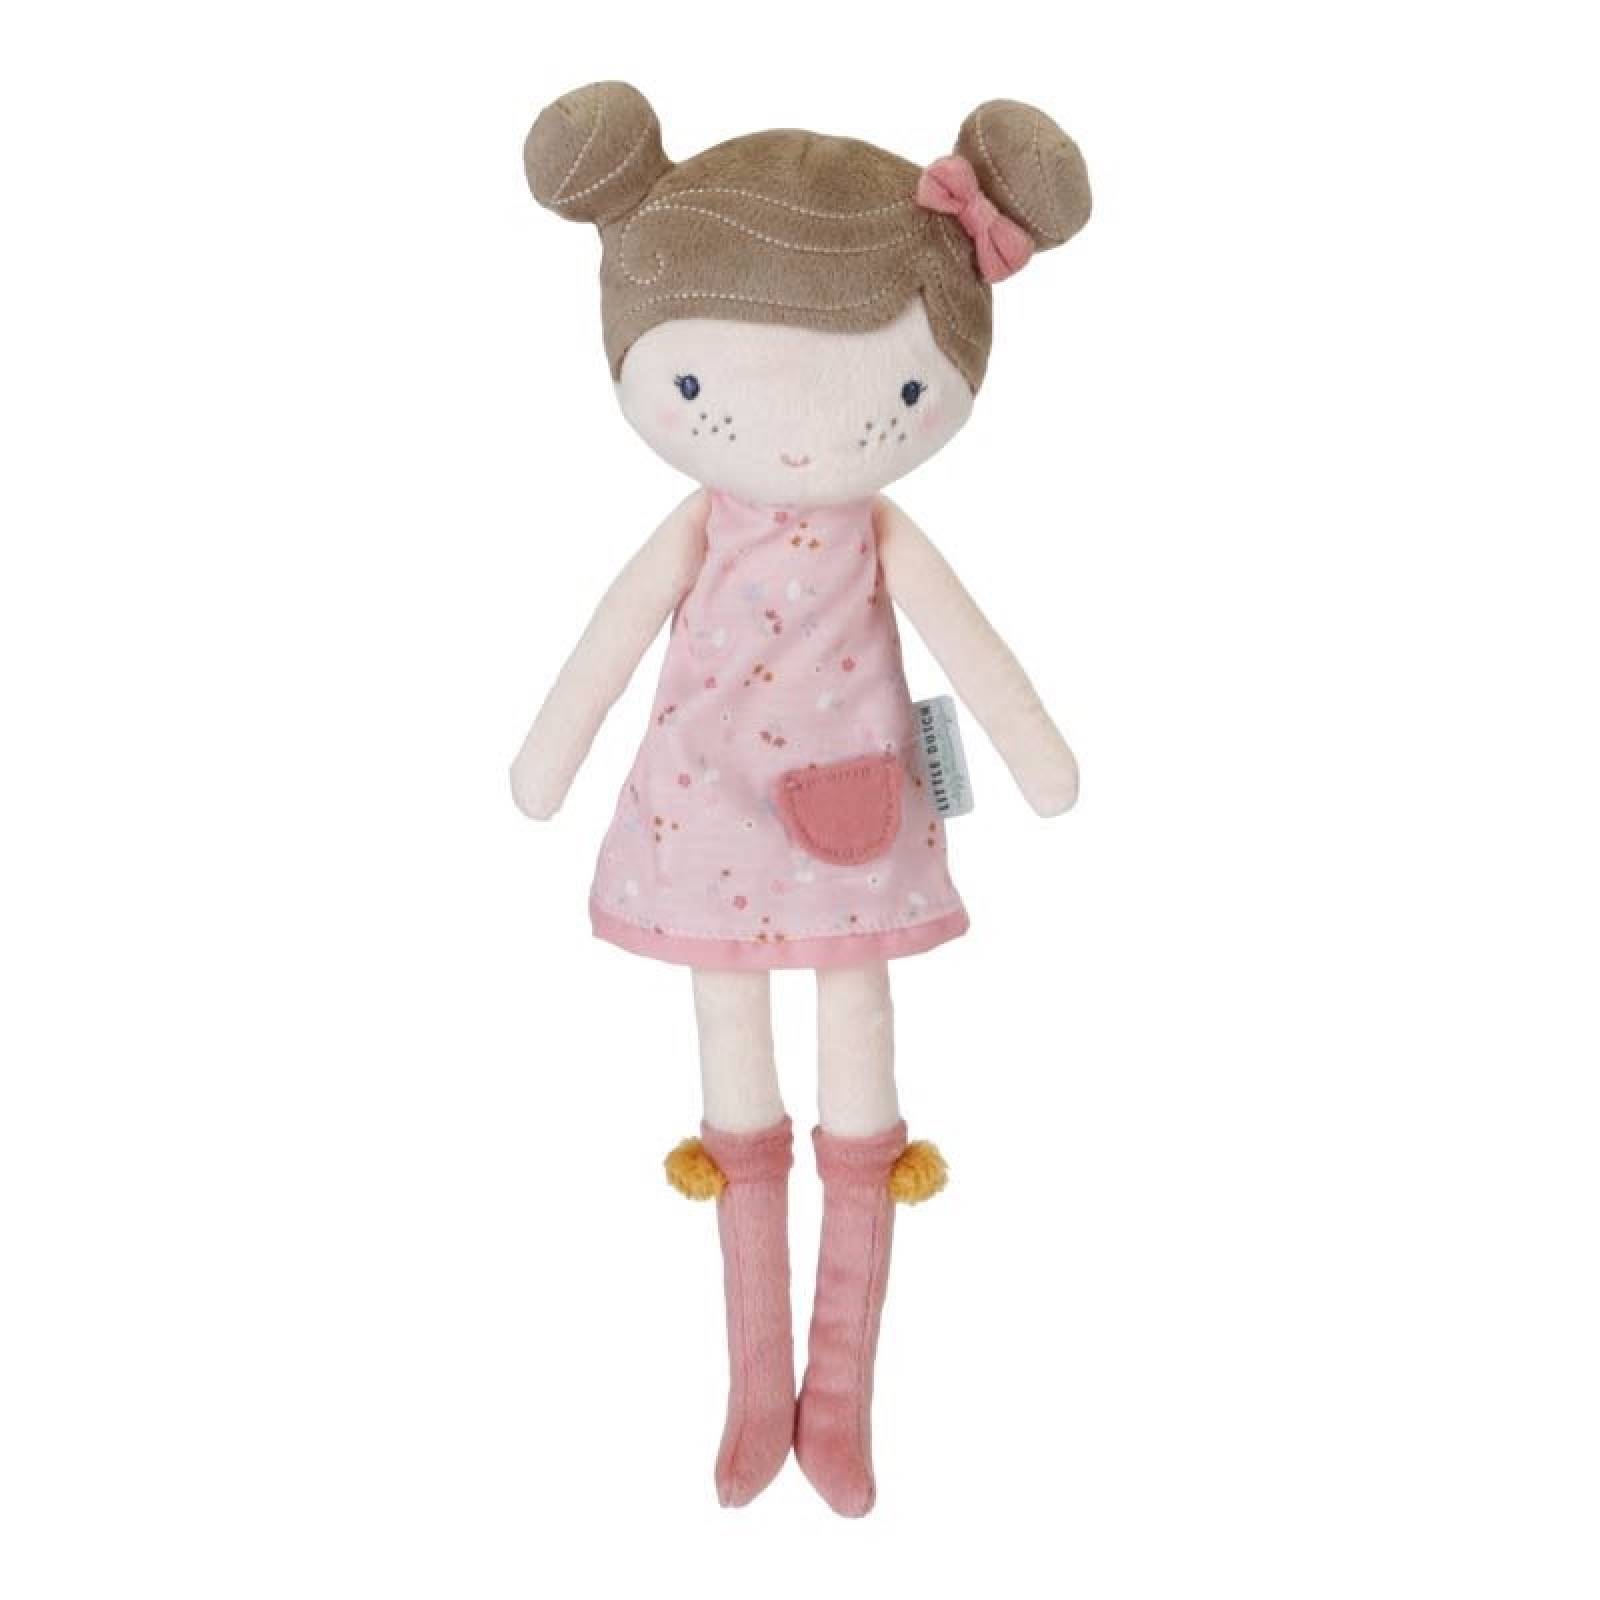 Rosa - Medium Soft Cuddle Doll By Little Dutch 1+